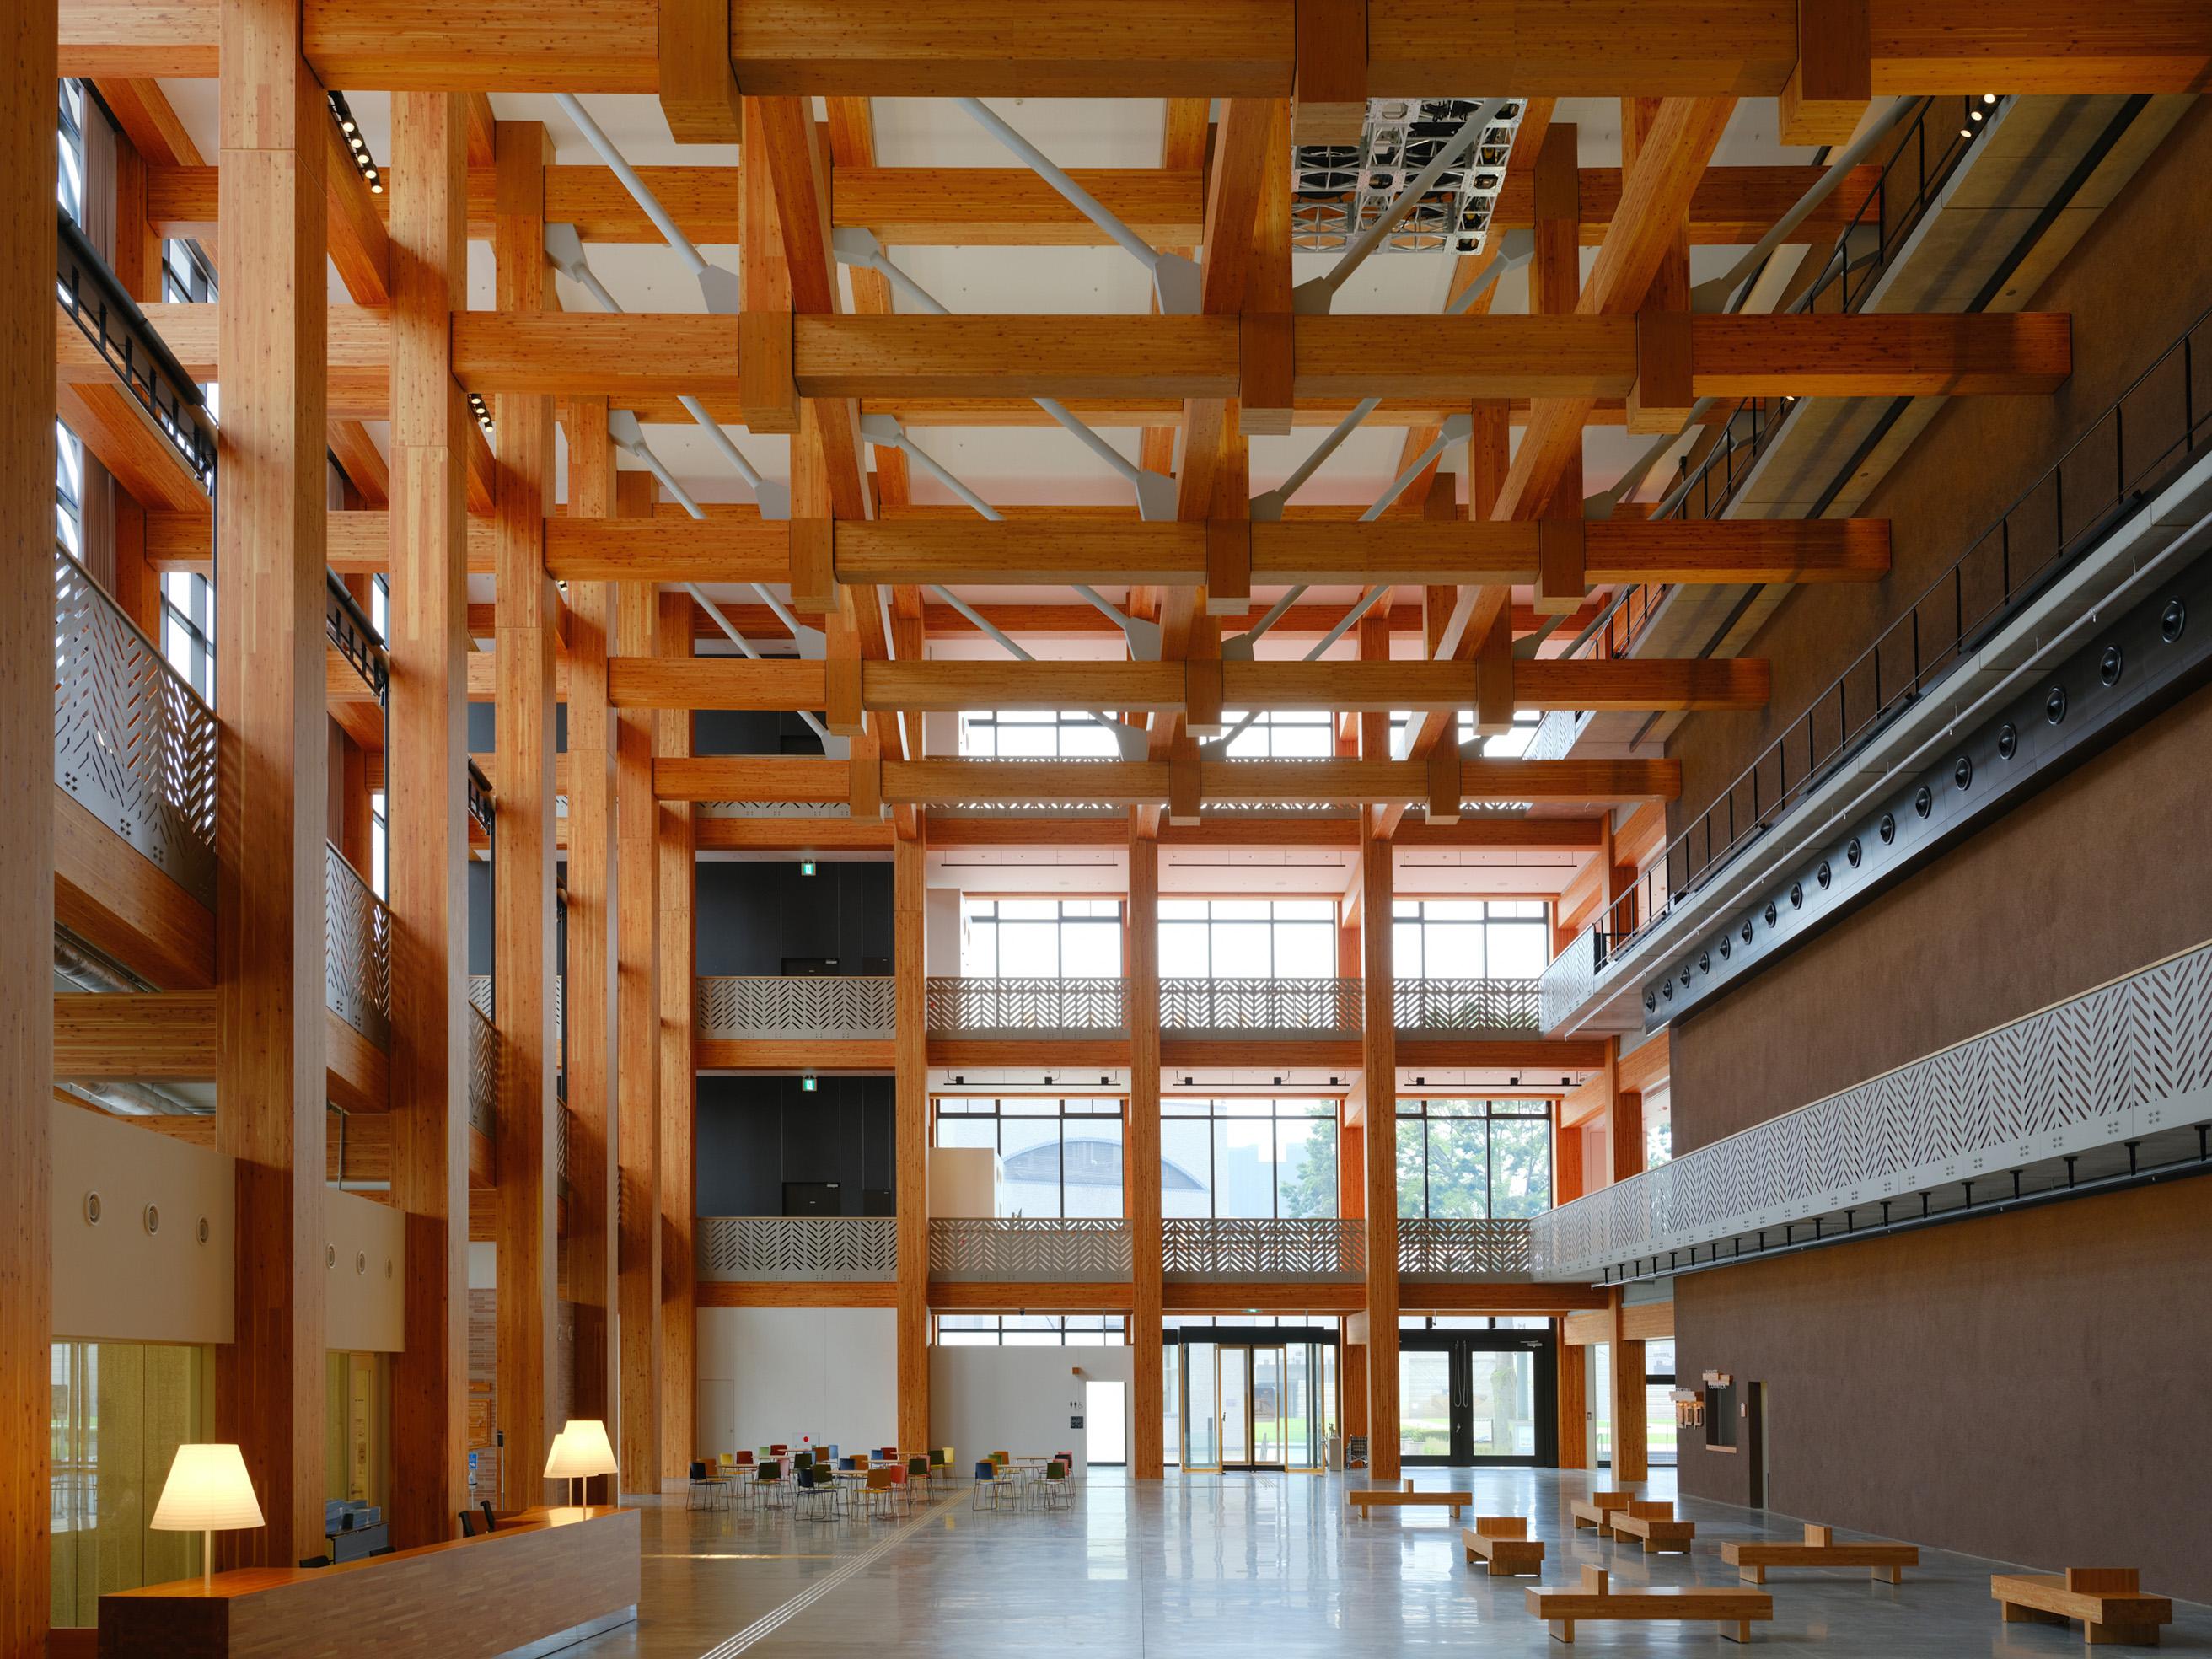 【独占】伊東豊雄自身が語る最新建築〈水戸市民会館〉。新たなマスターピースを共に巡る。